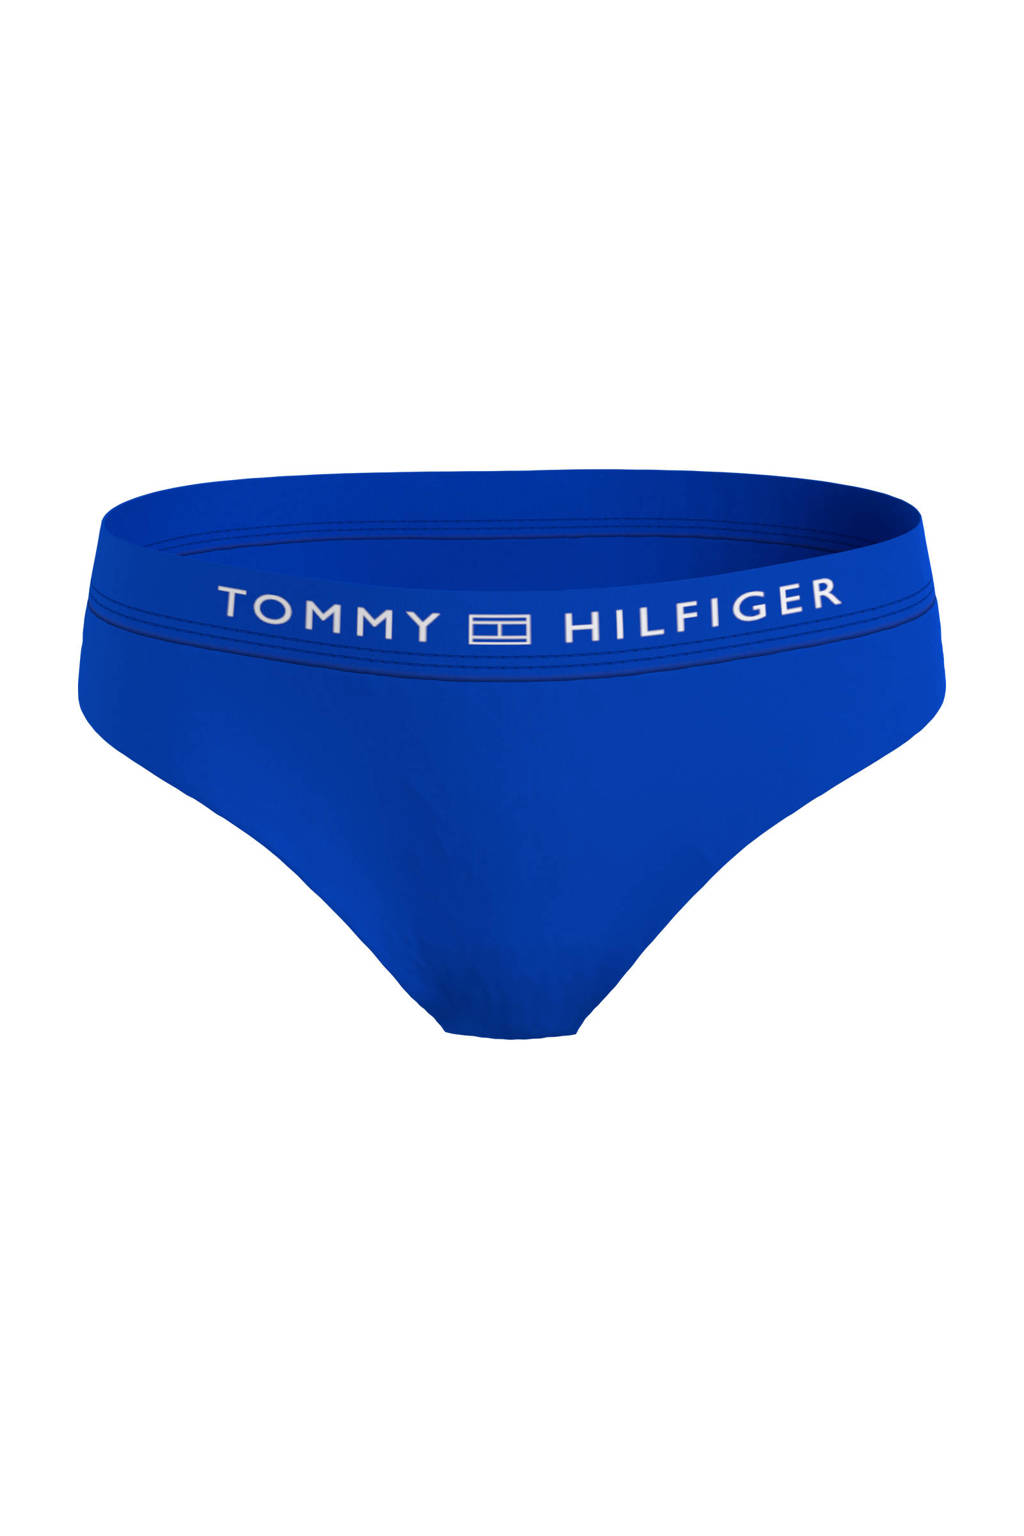 Tommy Hilfiger bikinibroekje blauw